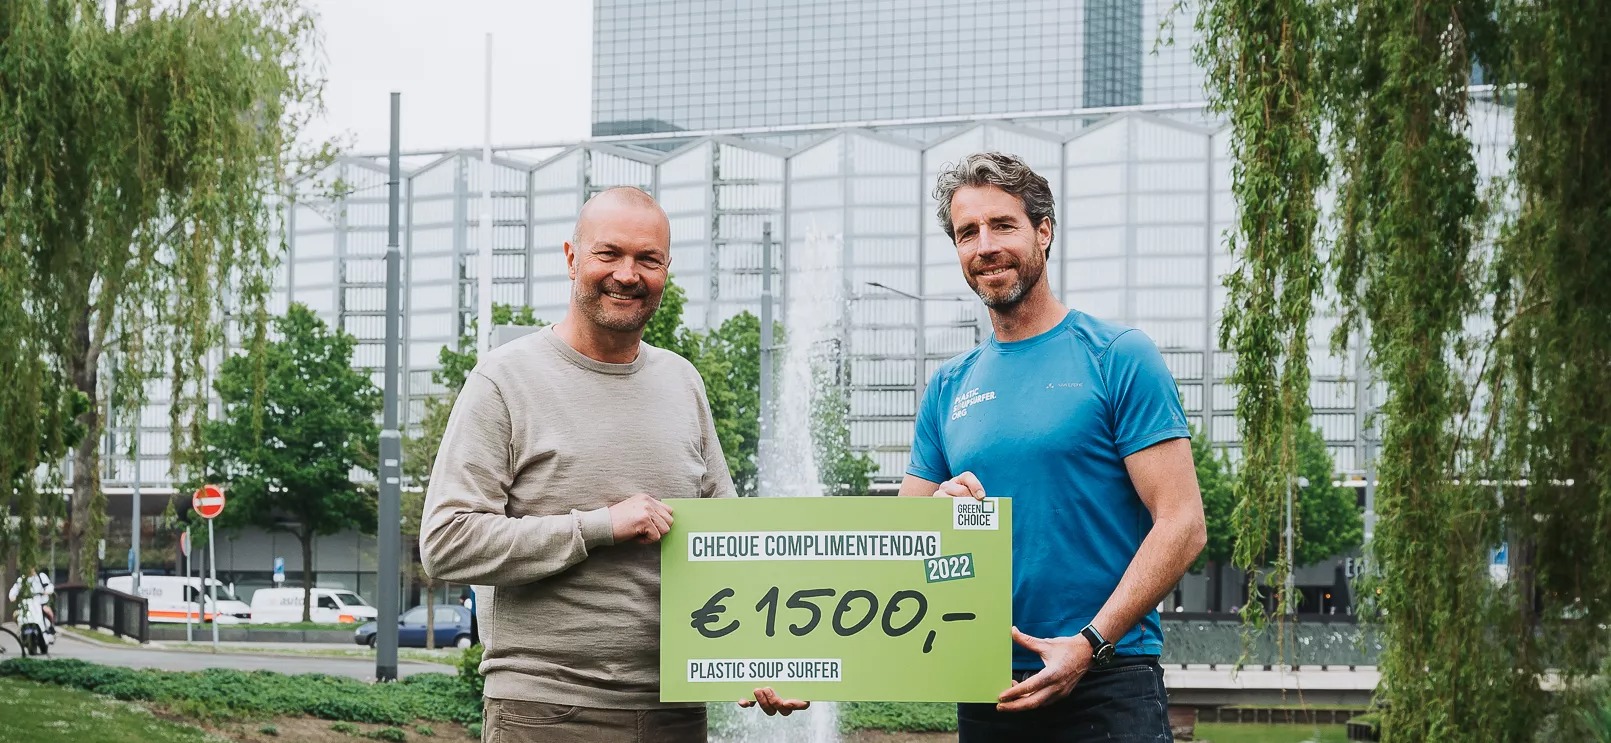 Medewerkers van Greenchoice halen samen €1500 op voor Plastic Soup Surfer